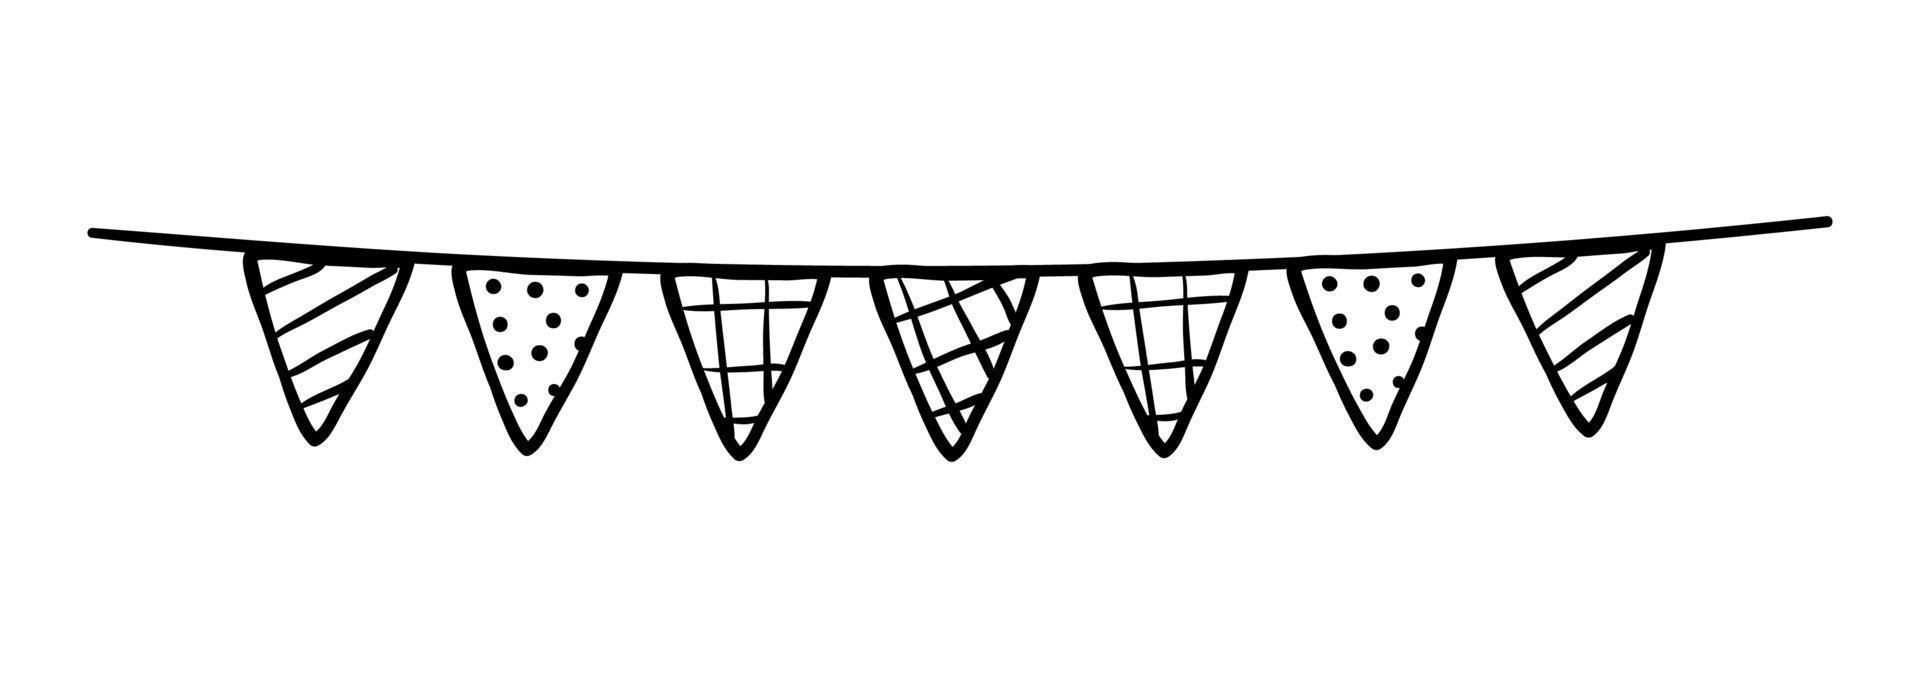 doodle bandiere di stamina per la decorazione. ghirlanda di schizzo di linea nera vettore